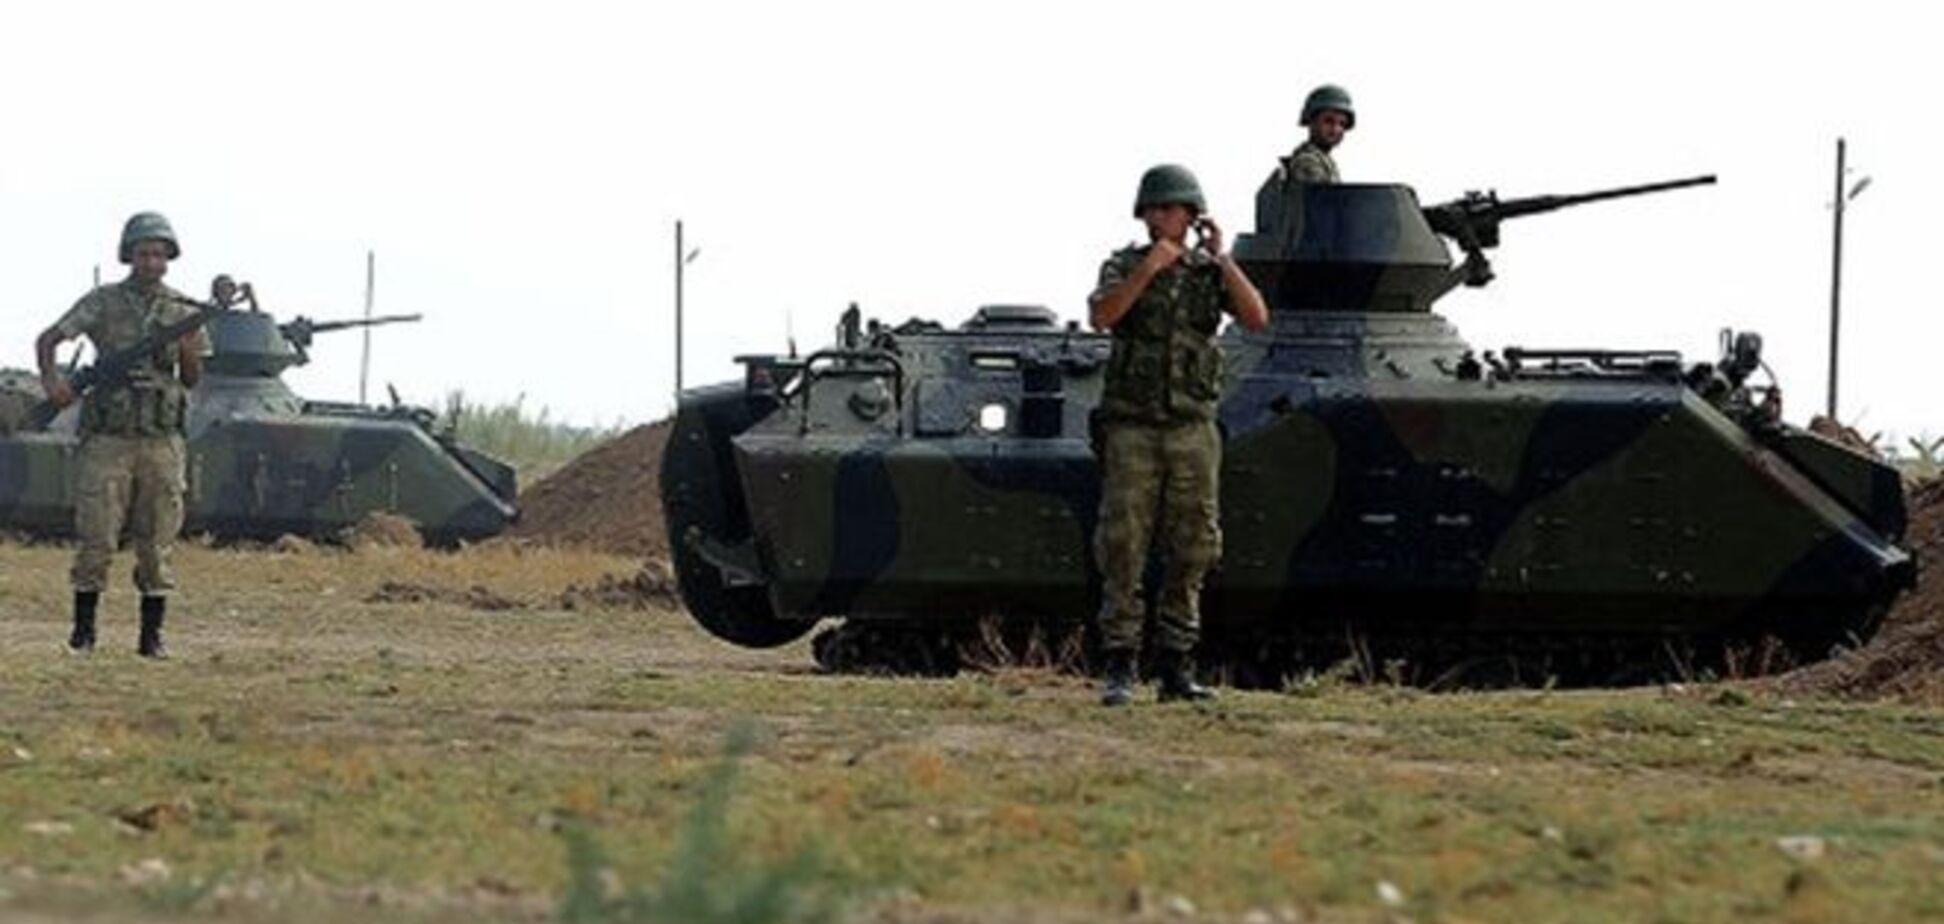 Турция стягивает к границе с Сирией бронетанковые подразделения